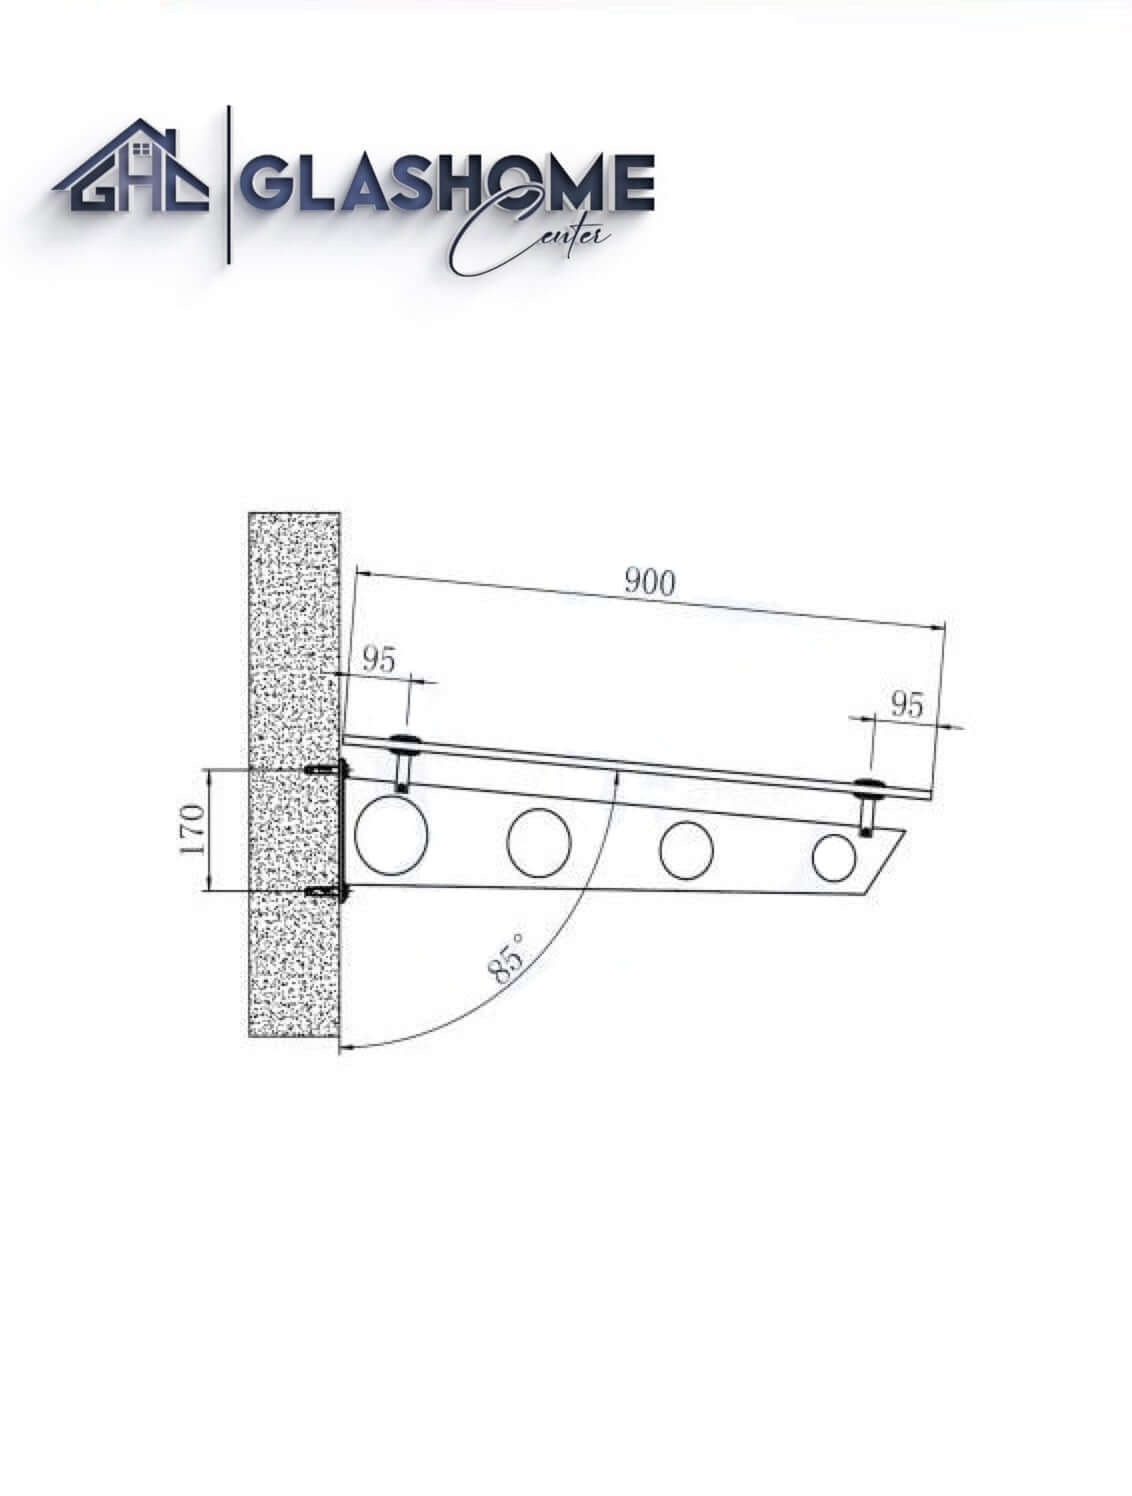 GlasHomeCenter - Glasvordach - Grauglas - 150x90cm - 13.1mm VSG - inkl. 2 schwarze Edelstahlhalterungen Variante "Stockholm"